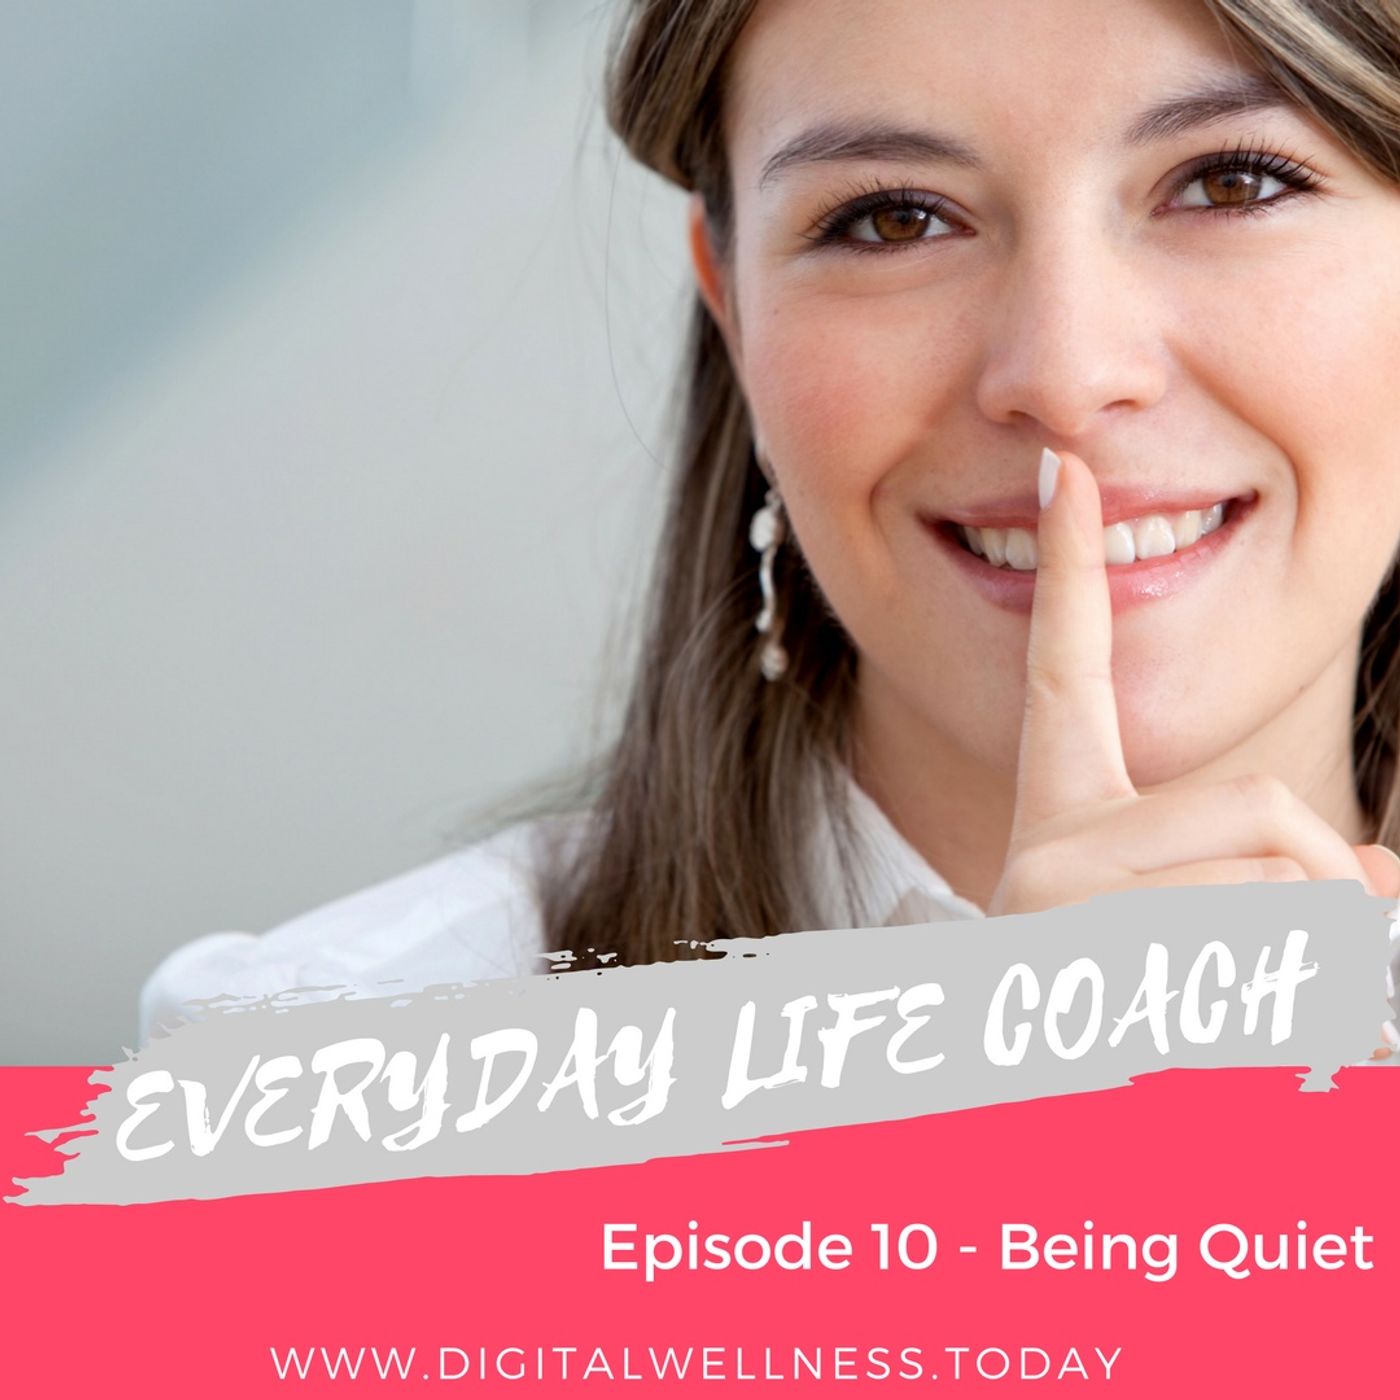 Episode 10 - Being Quiet